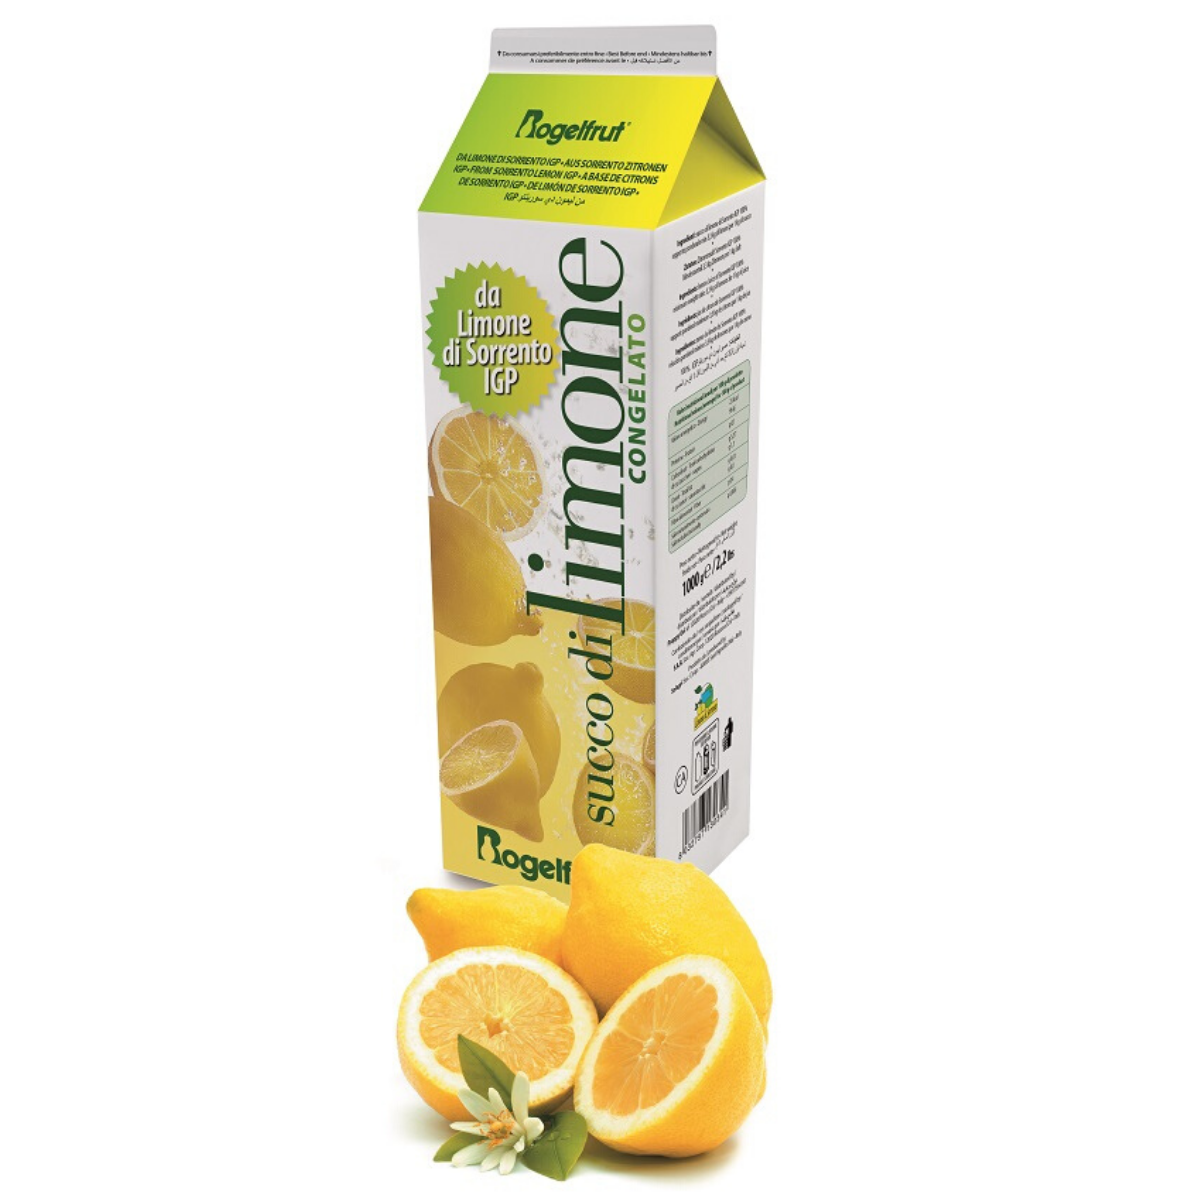 Succo di limone di sorrento IGP - Lutigel